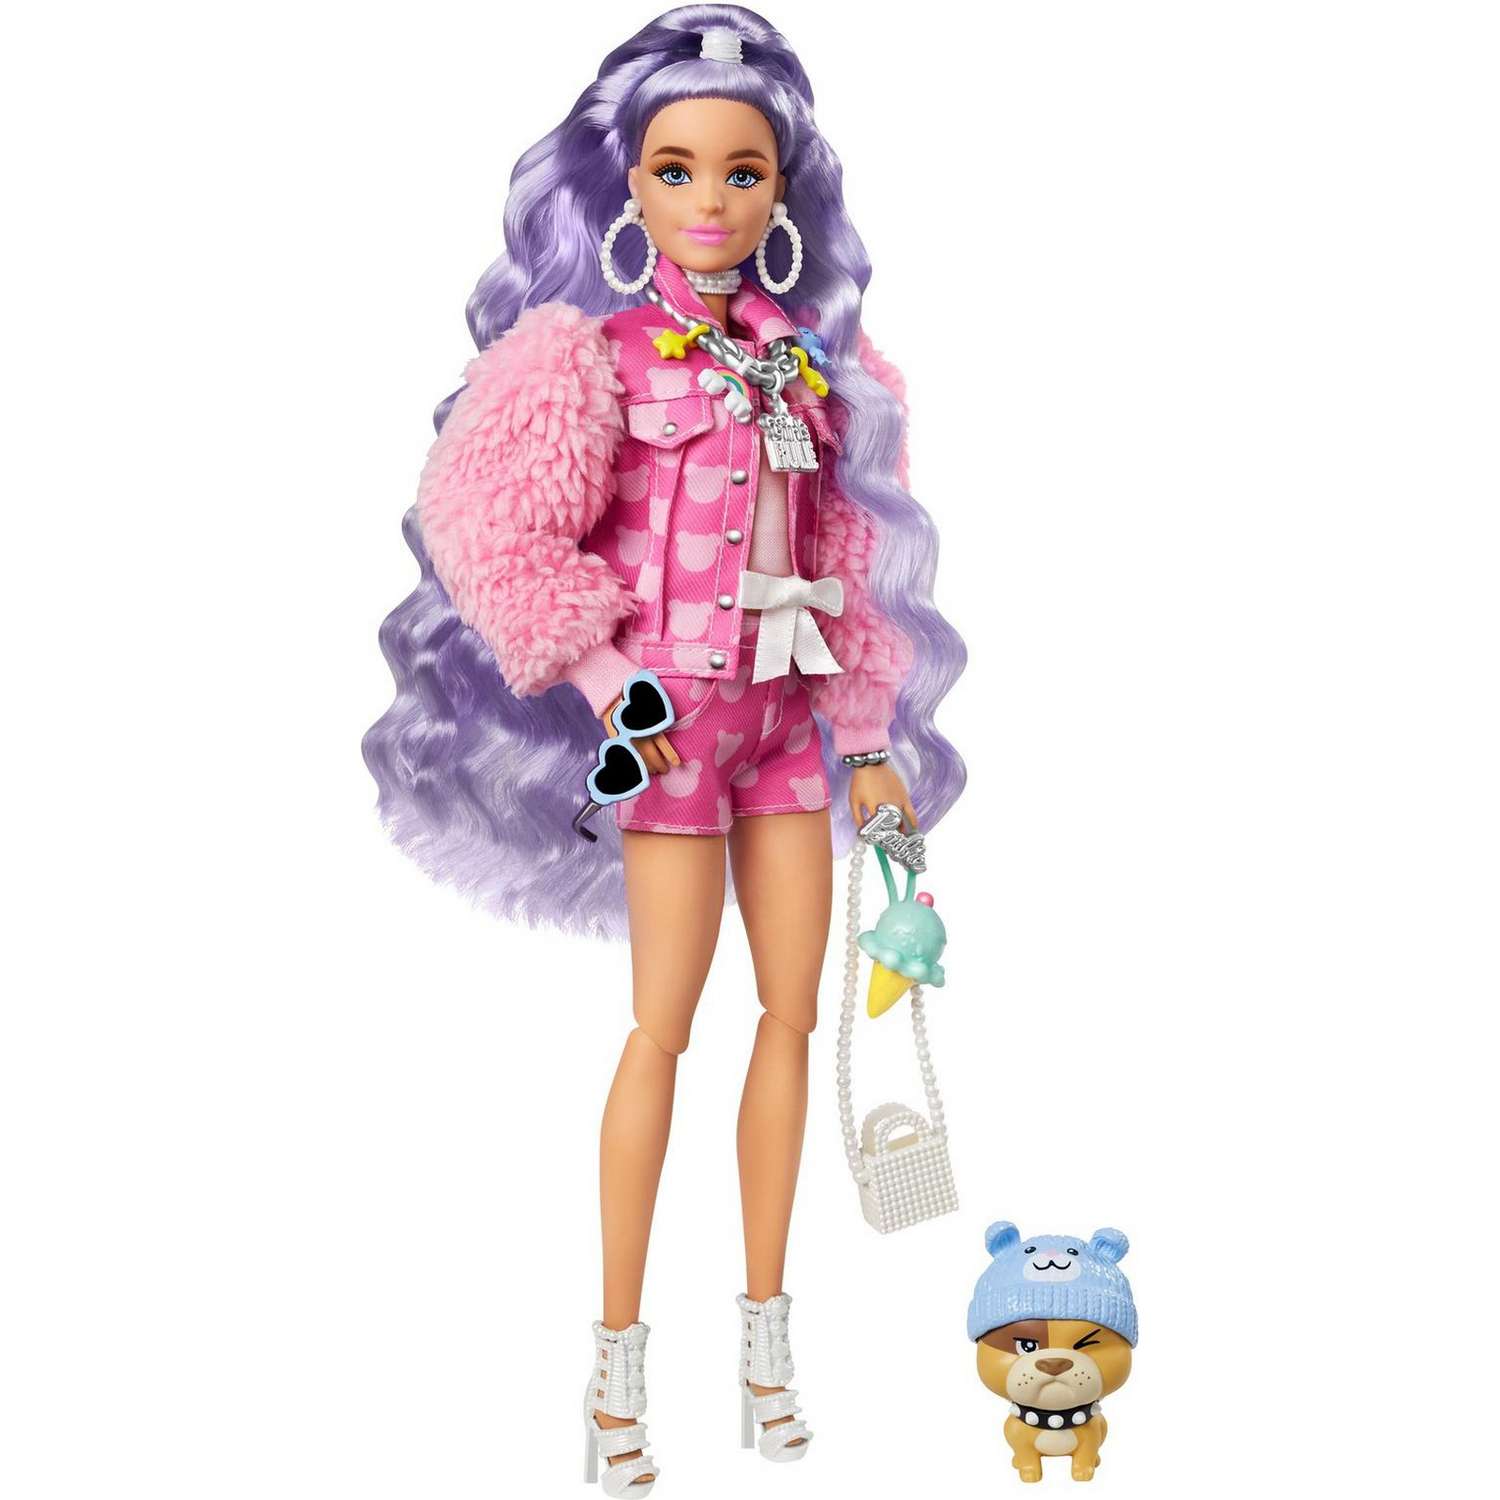 Mattel Barbie Fashionistas Doll Art Кукла Барби купить по выгодной цене в ремонты-бмв.рф